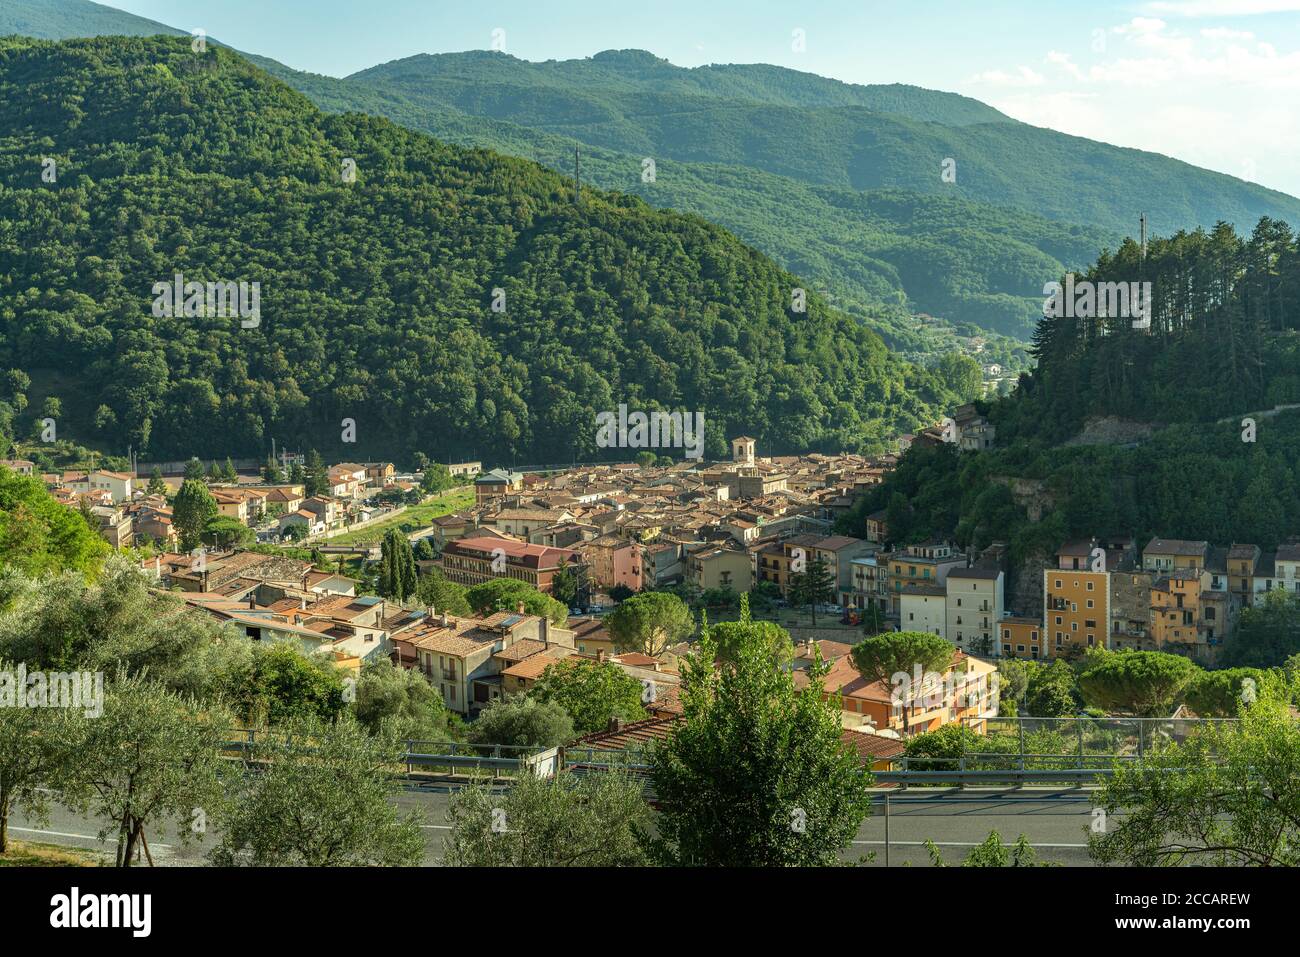 Herrliche Aussicht auf das Valle di Corno, mit Antrodoco, der den Zugang kontrolliert. Antrodoco ist berühmt für seine Kastanien. Latium Region, Italien, Europa Stockfoto